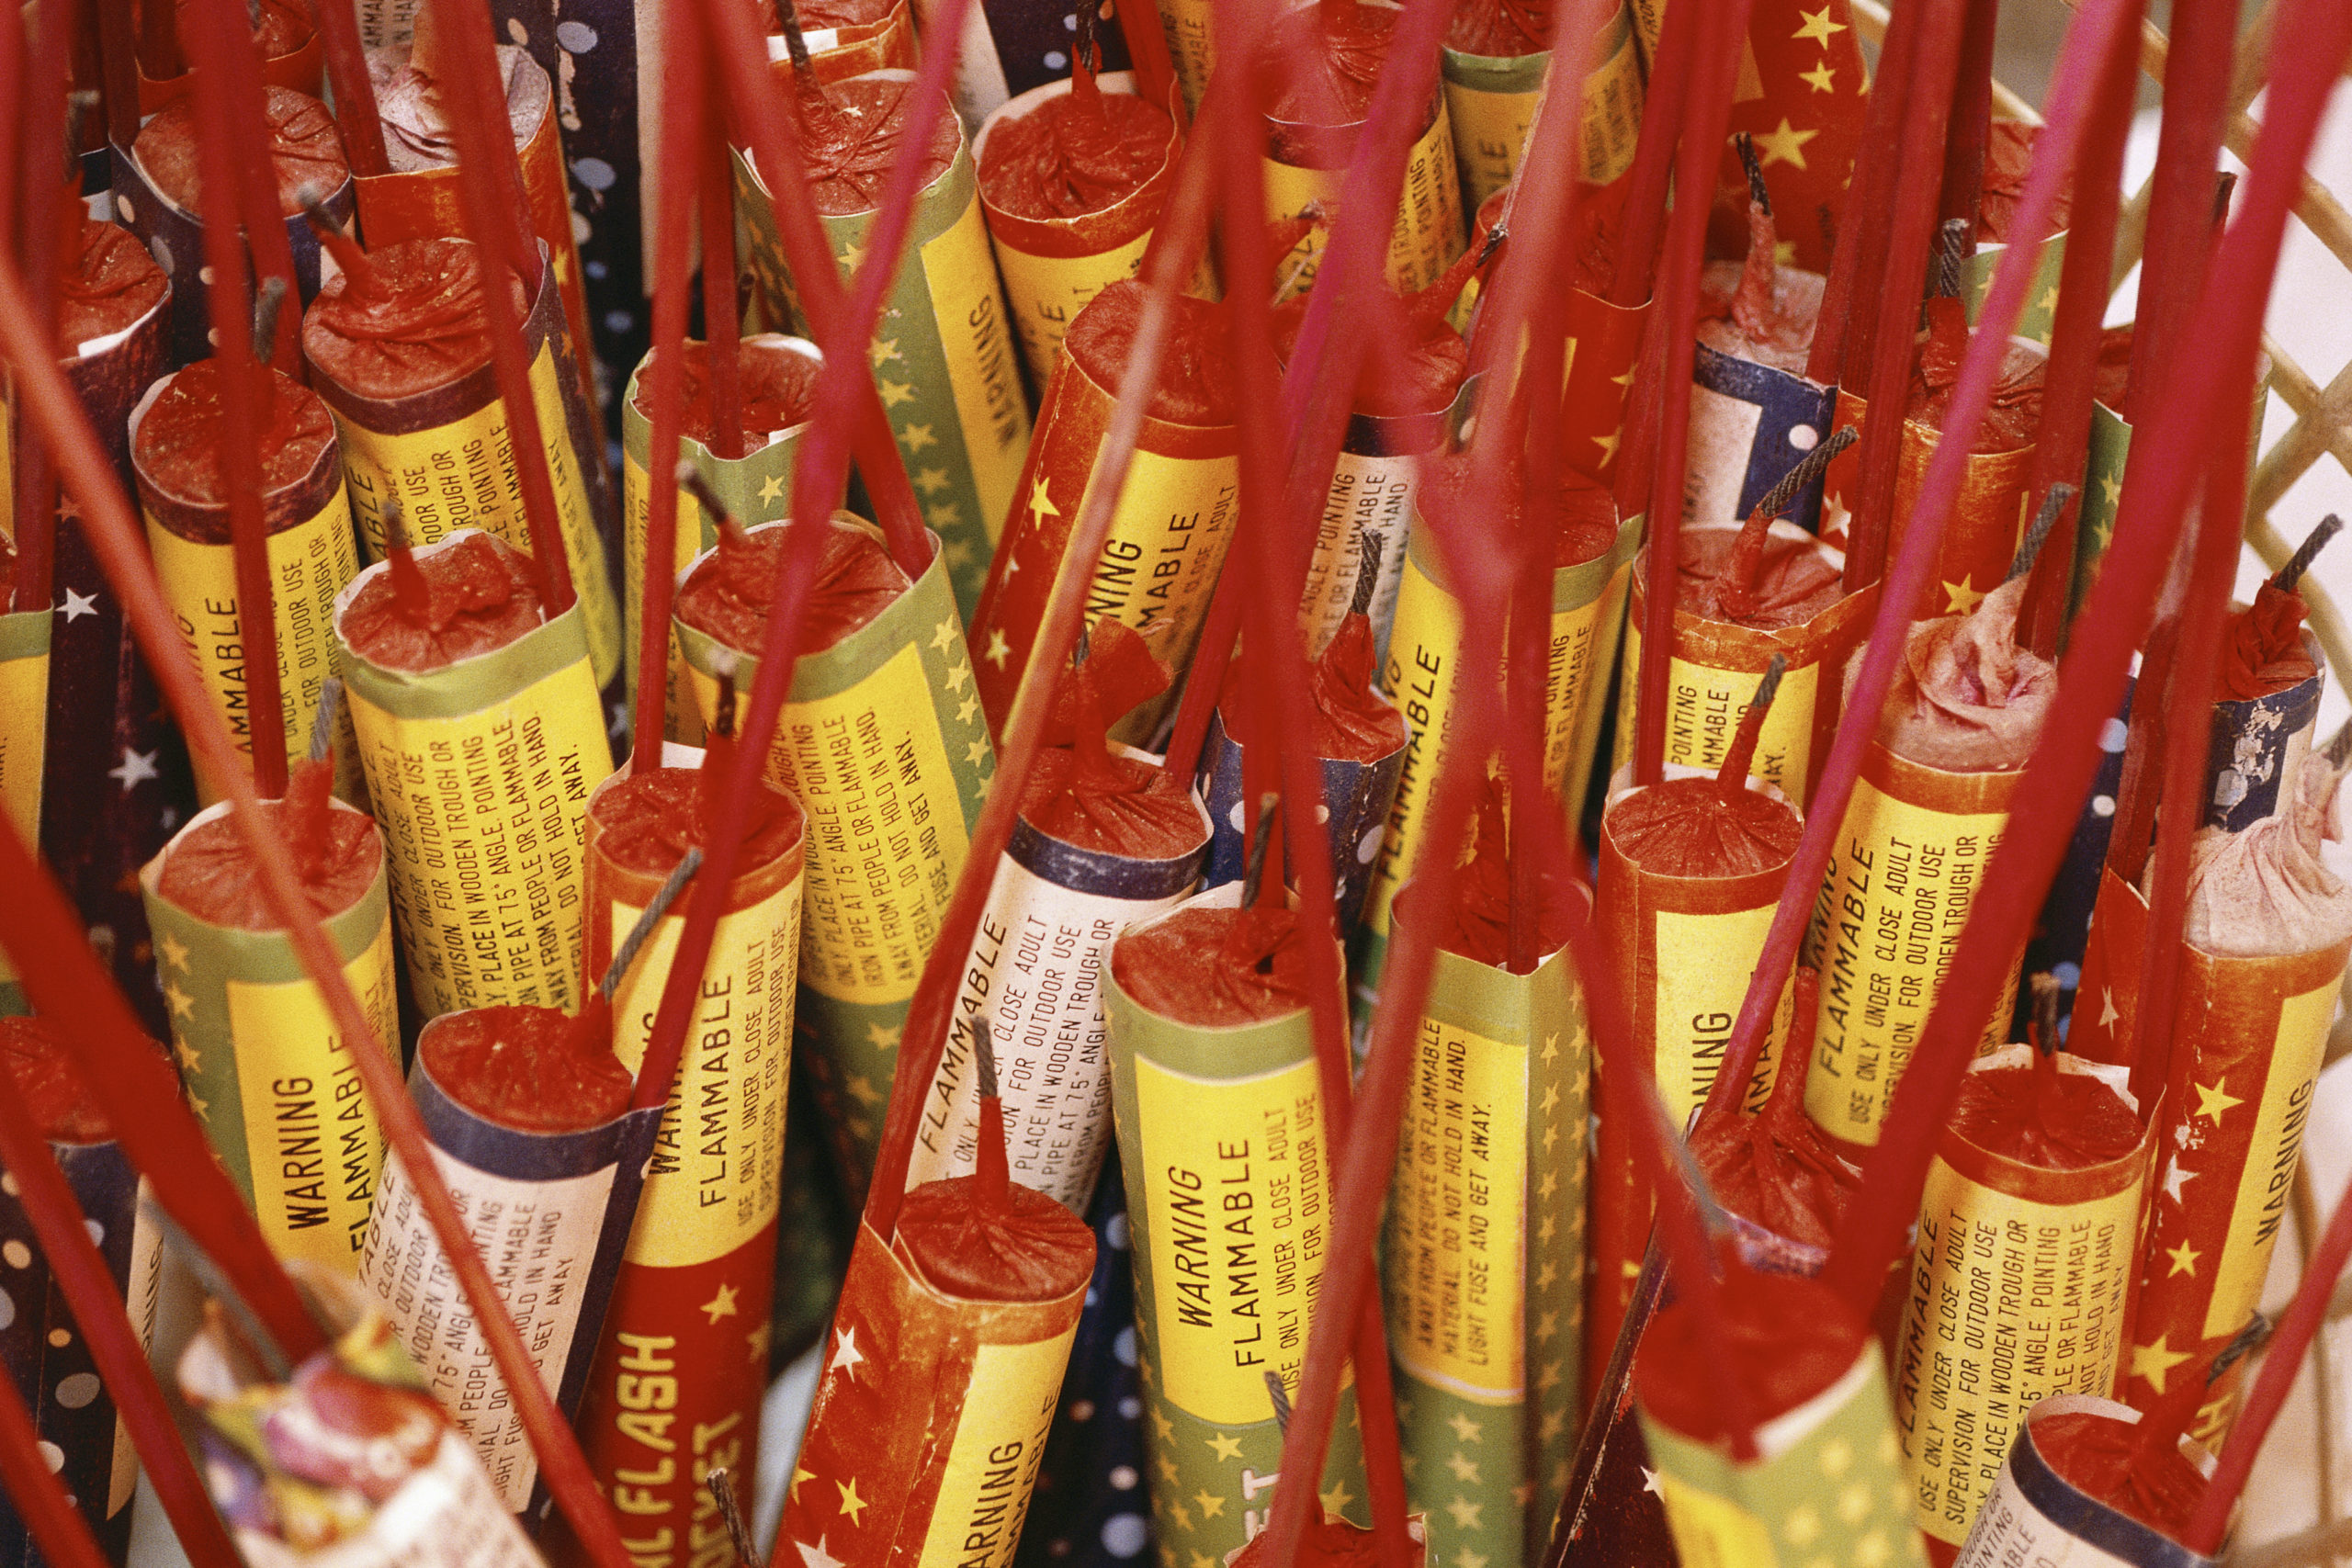 Are Bottle Rockets a Serious Fire Danger?